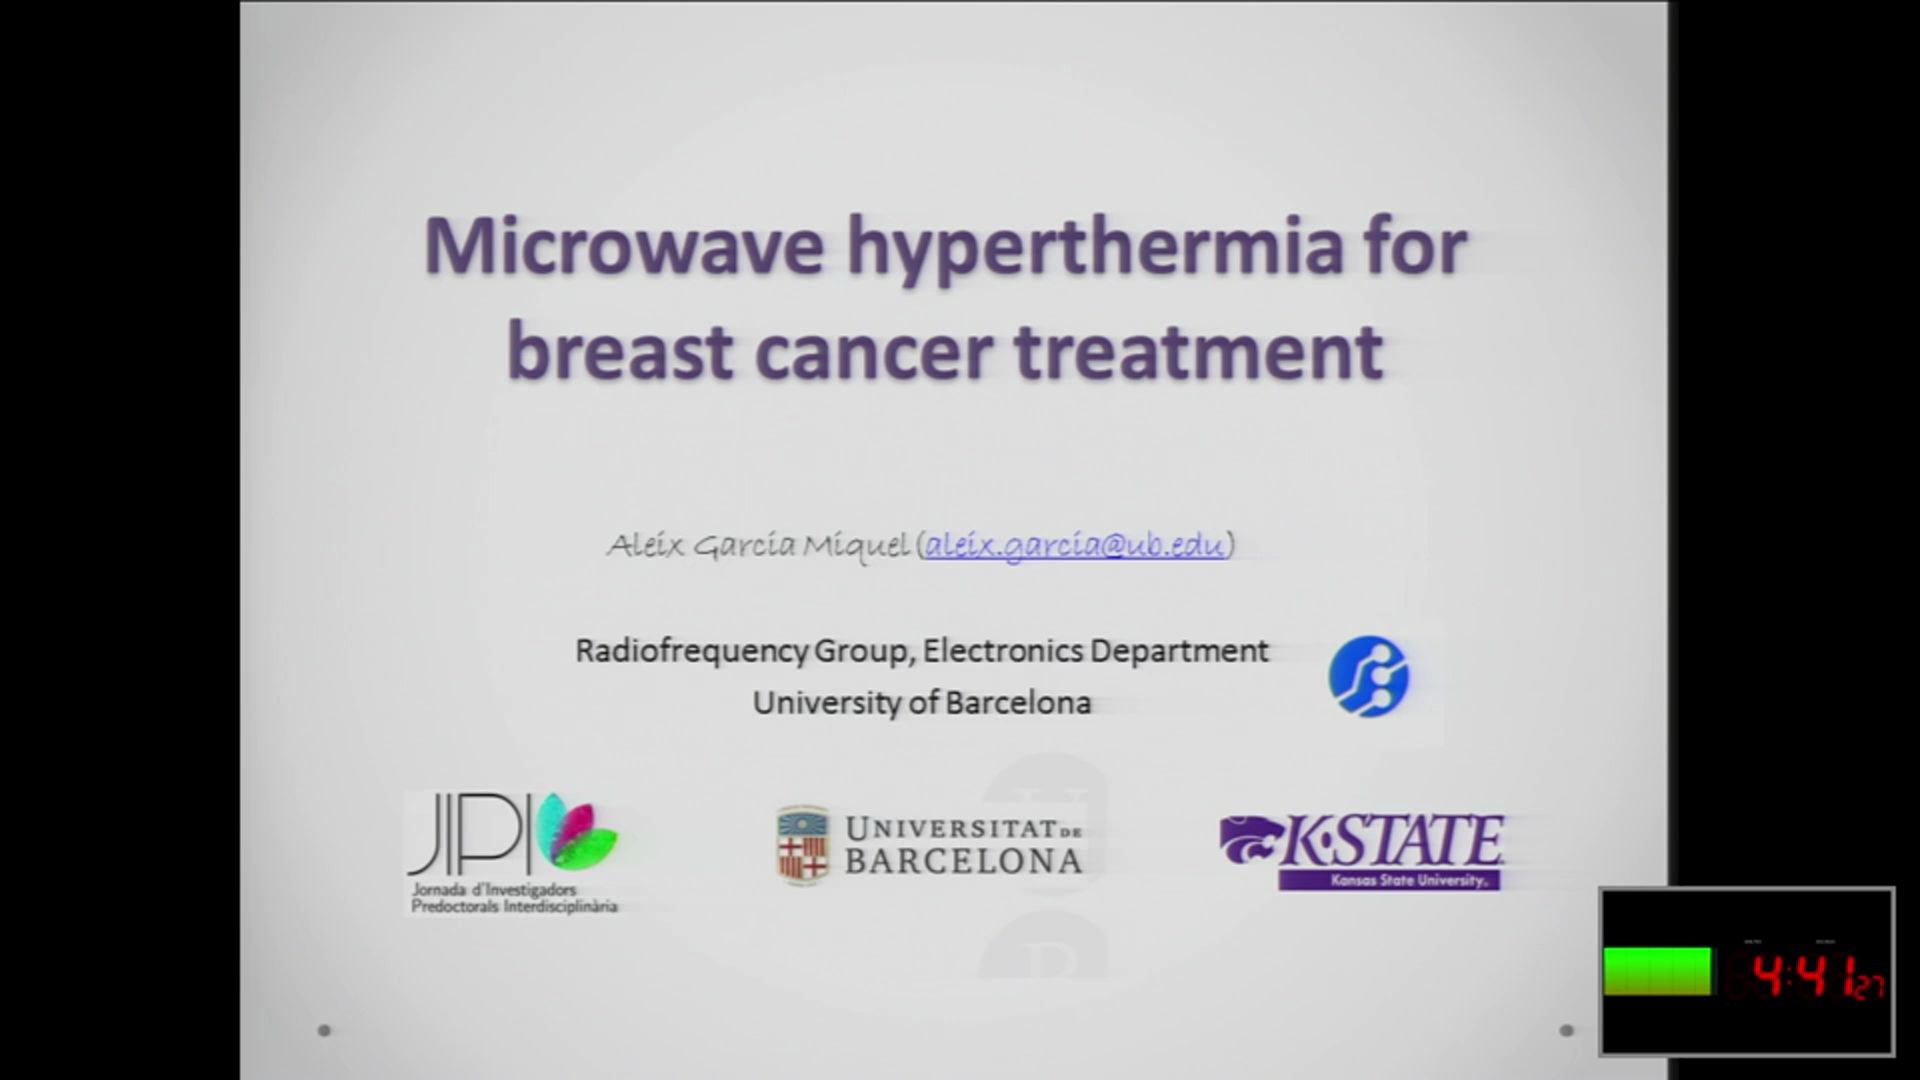 Microwave hyperhermia for breast cancer treatment